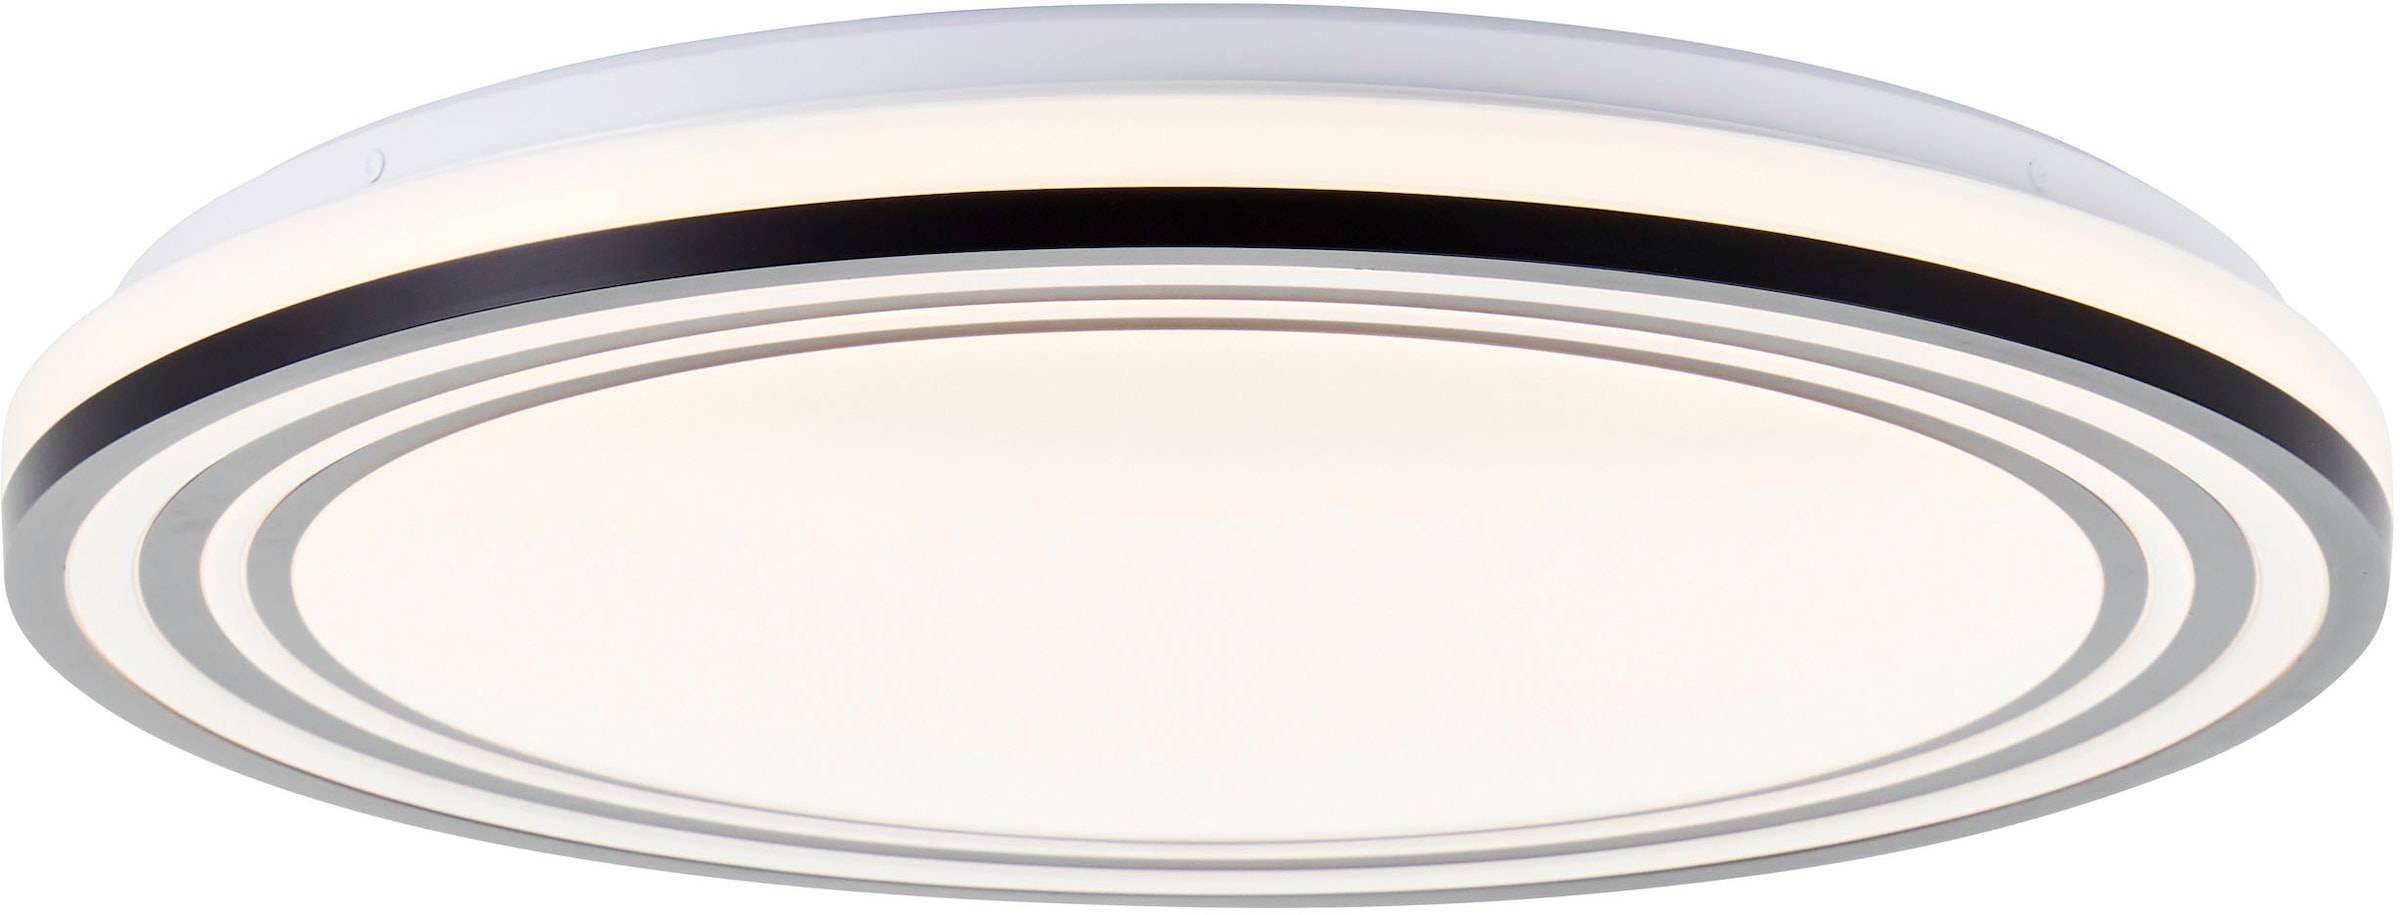 BreLight LED Wandleuchte »Kobana«, D 49 cm, 3800 lm, 3000-6500 K, dimmbar, CCT, schwarz/weiß